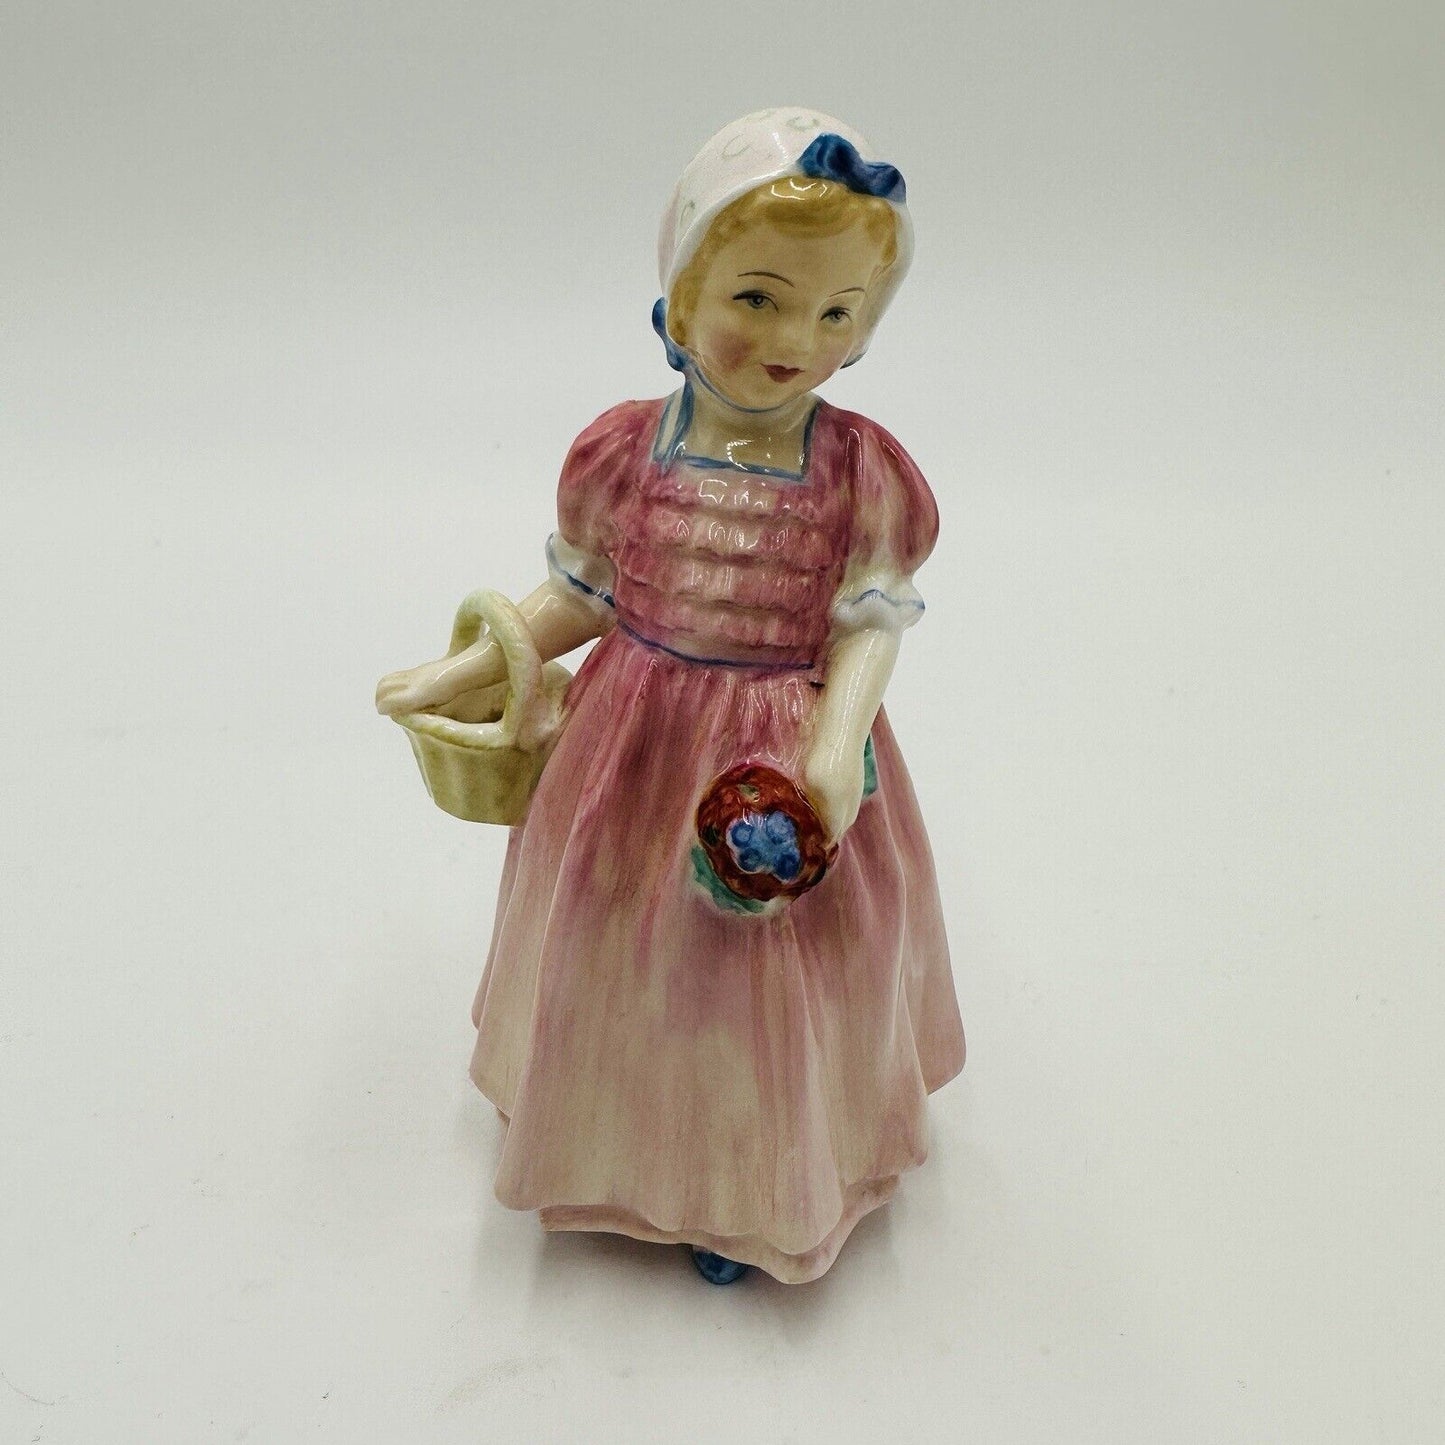 Royal Doulton Figurine Tinkle Bell HN 1677 Porcelain England Pink Girl Basket